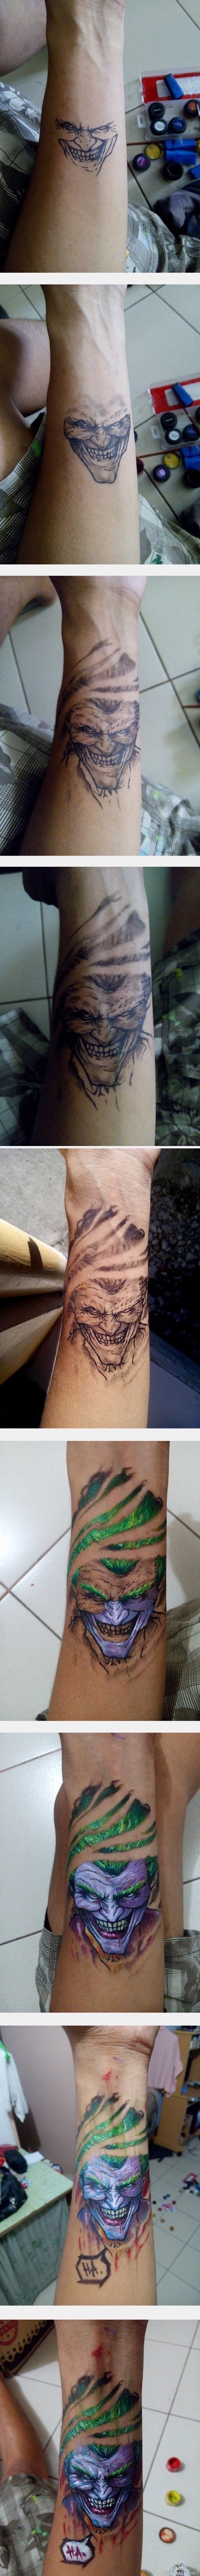 Jokeri maalaus - Joku maalasi hienon jokerin ihoonsa